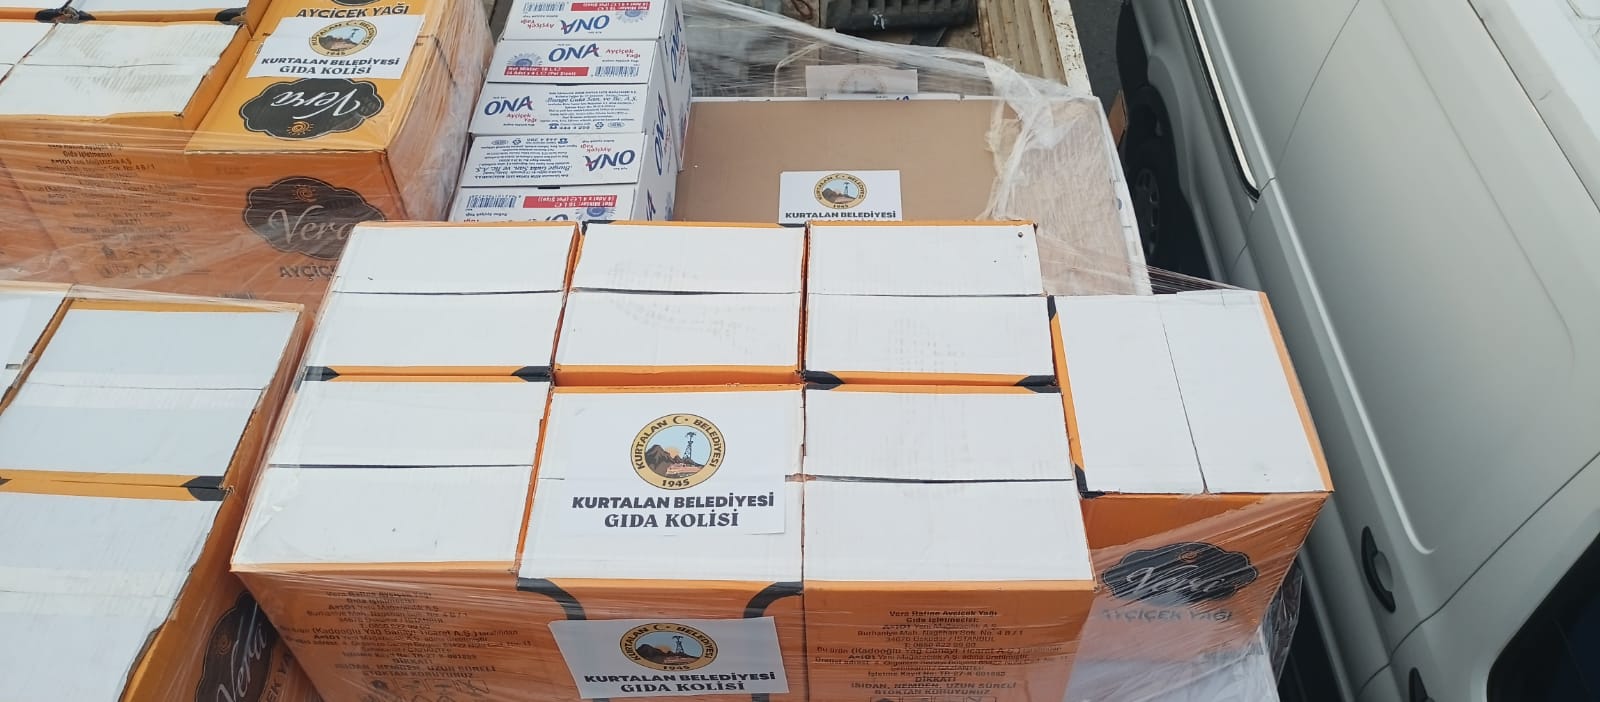 Siirt’in Kurtalan İlçesinden, Deprem Bölgesine 7.500 Litre Ayçiçek Yağı Yardımı Gönderildi